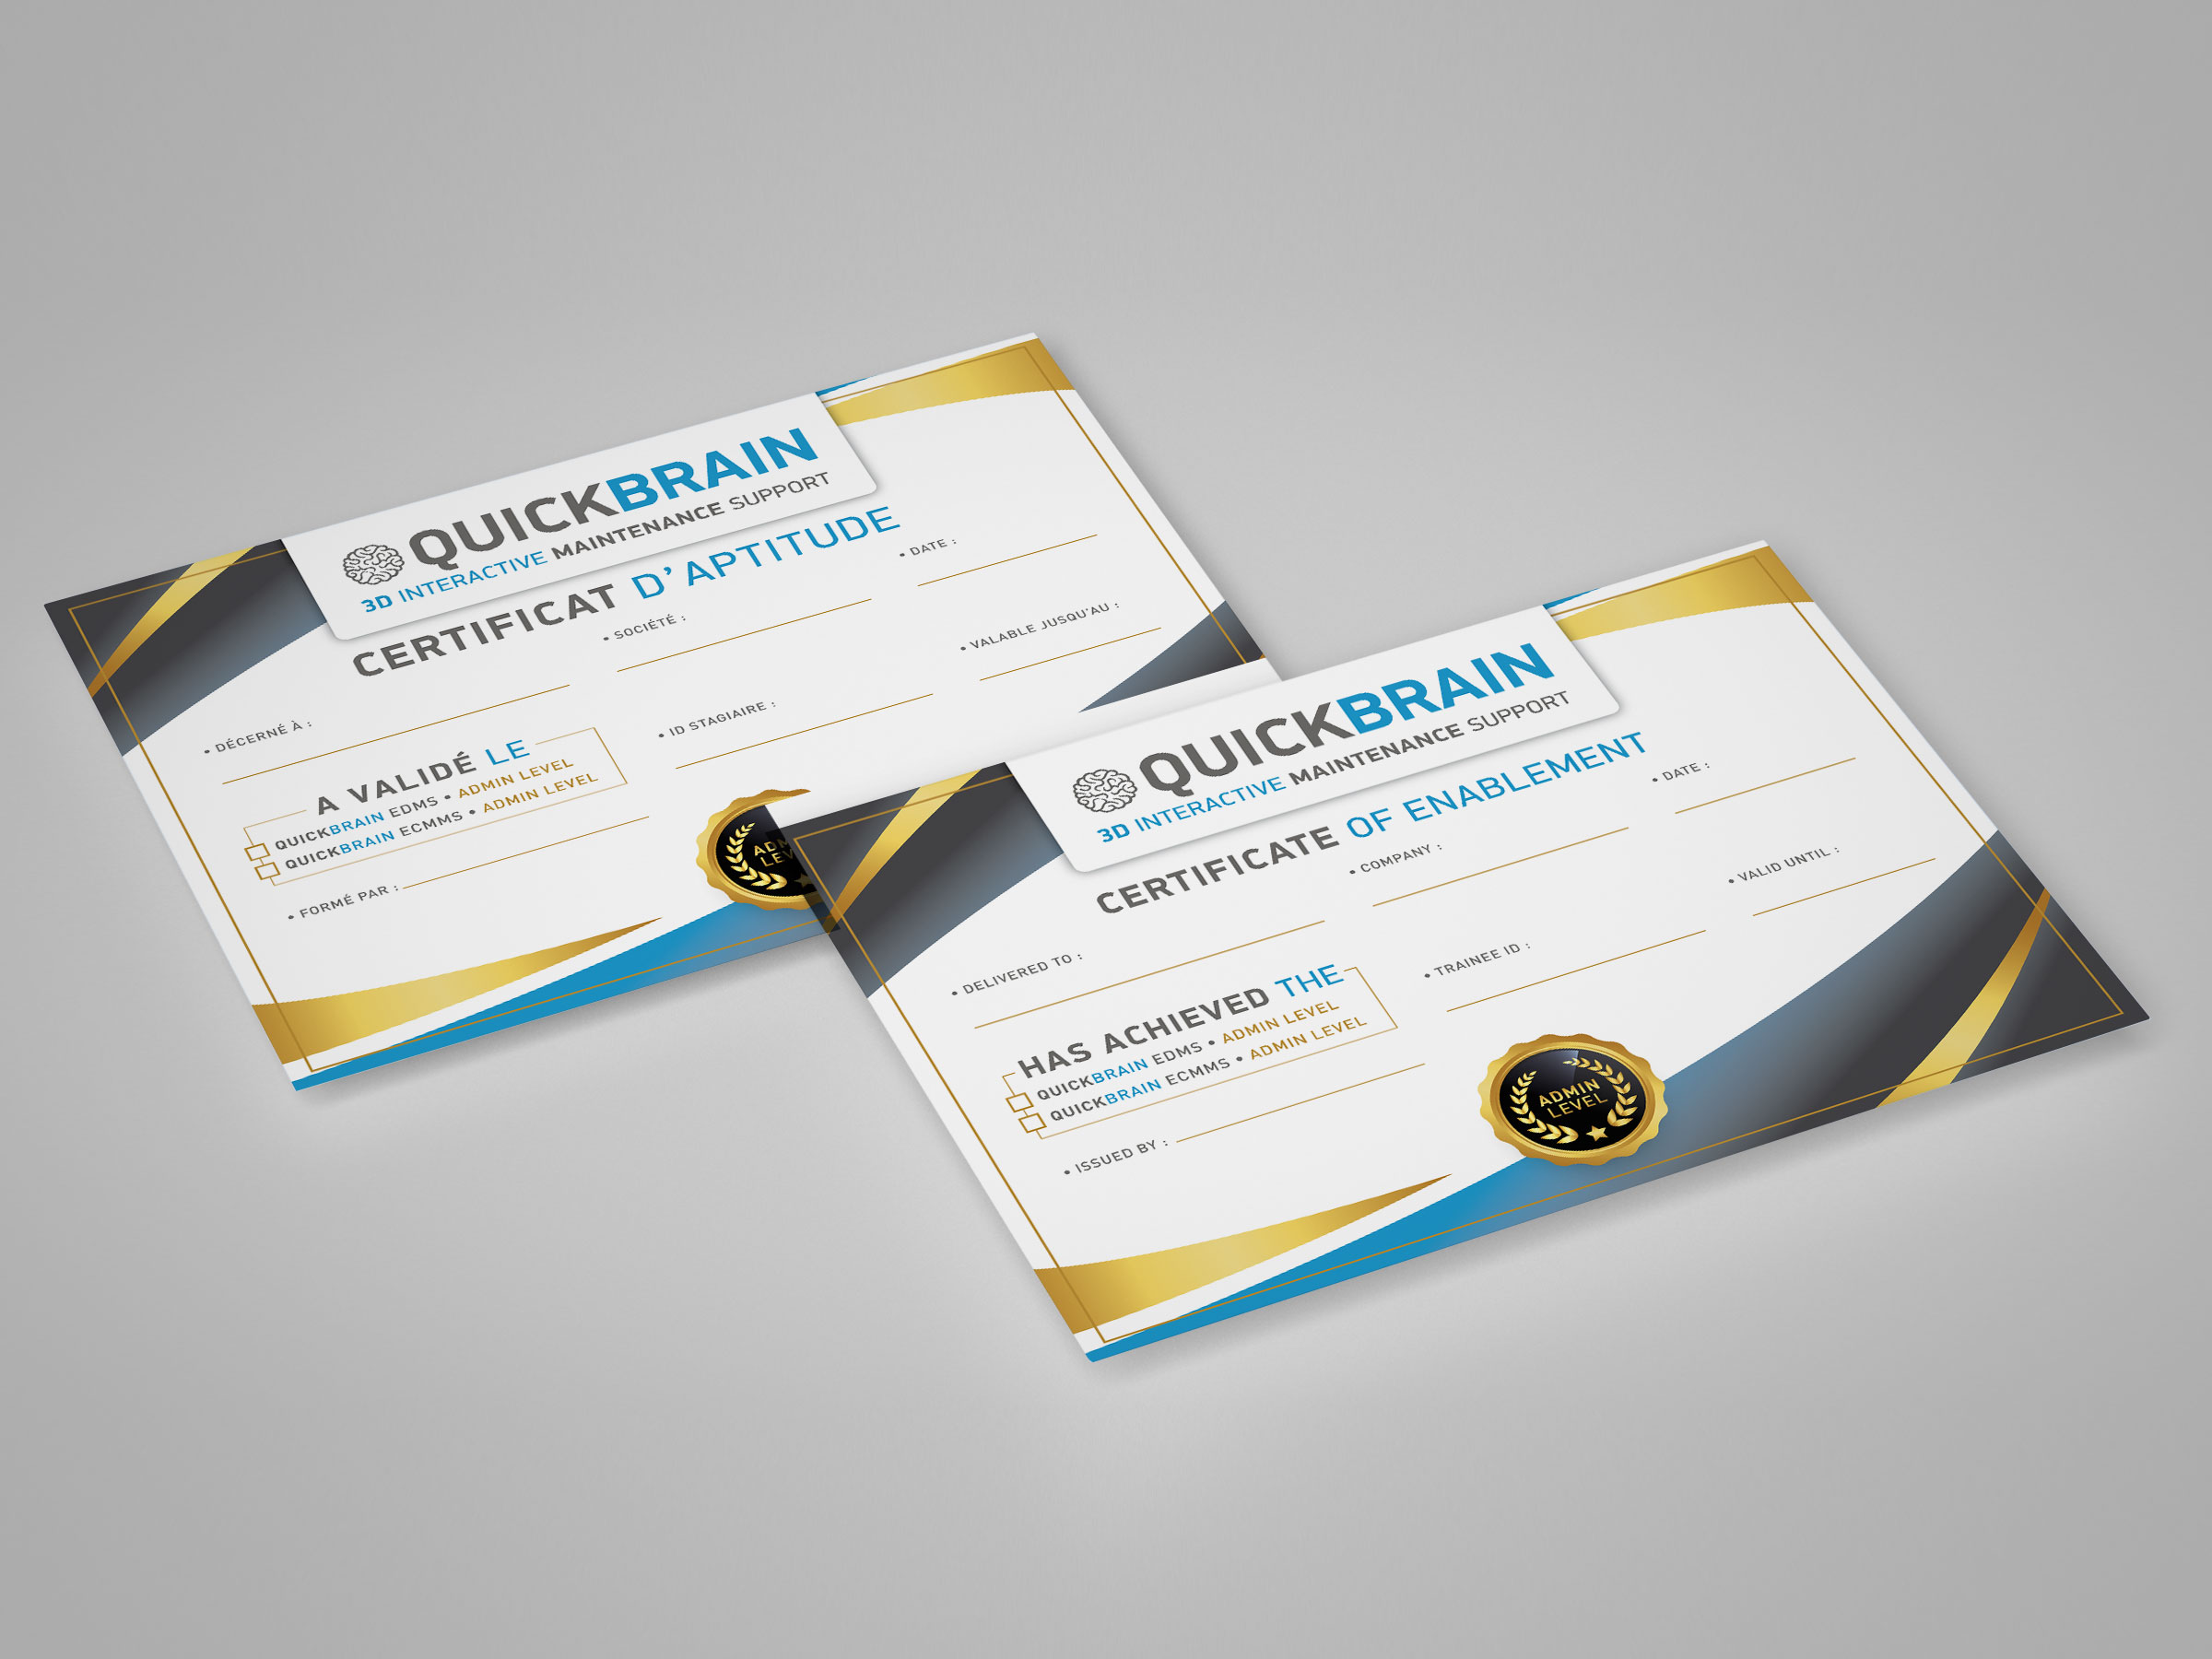 Gold-admin-level-Quickbrain-Academy-Certification-GMAO-3D-Crazylog-V1